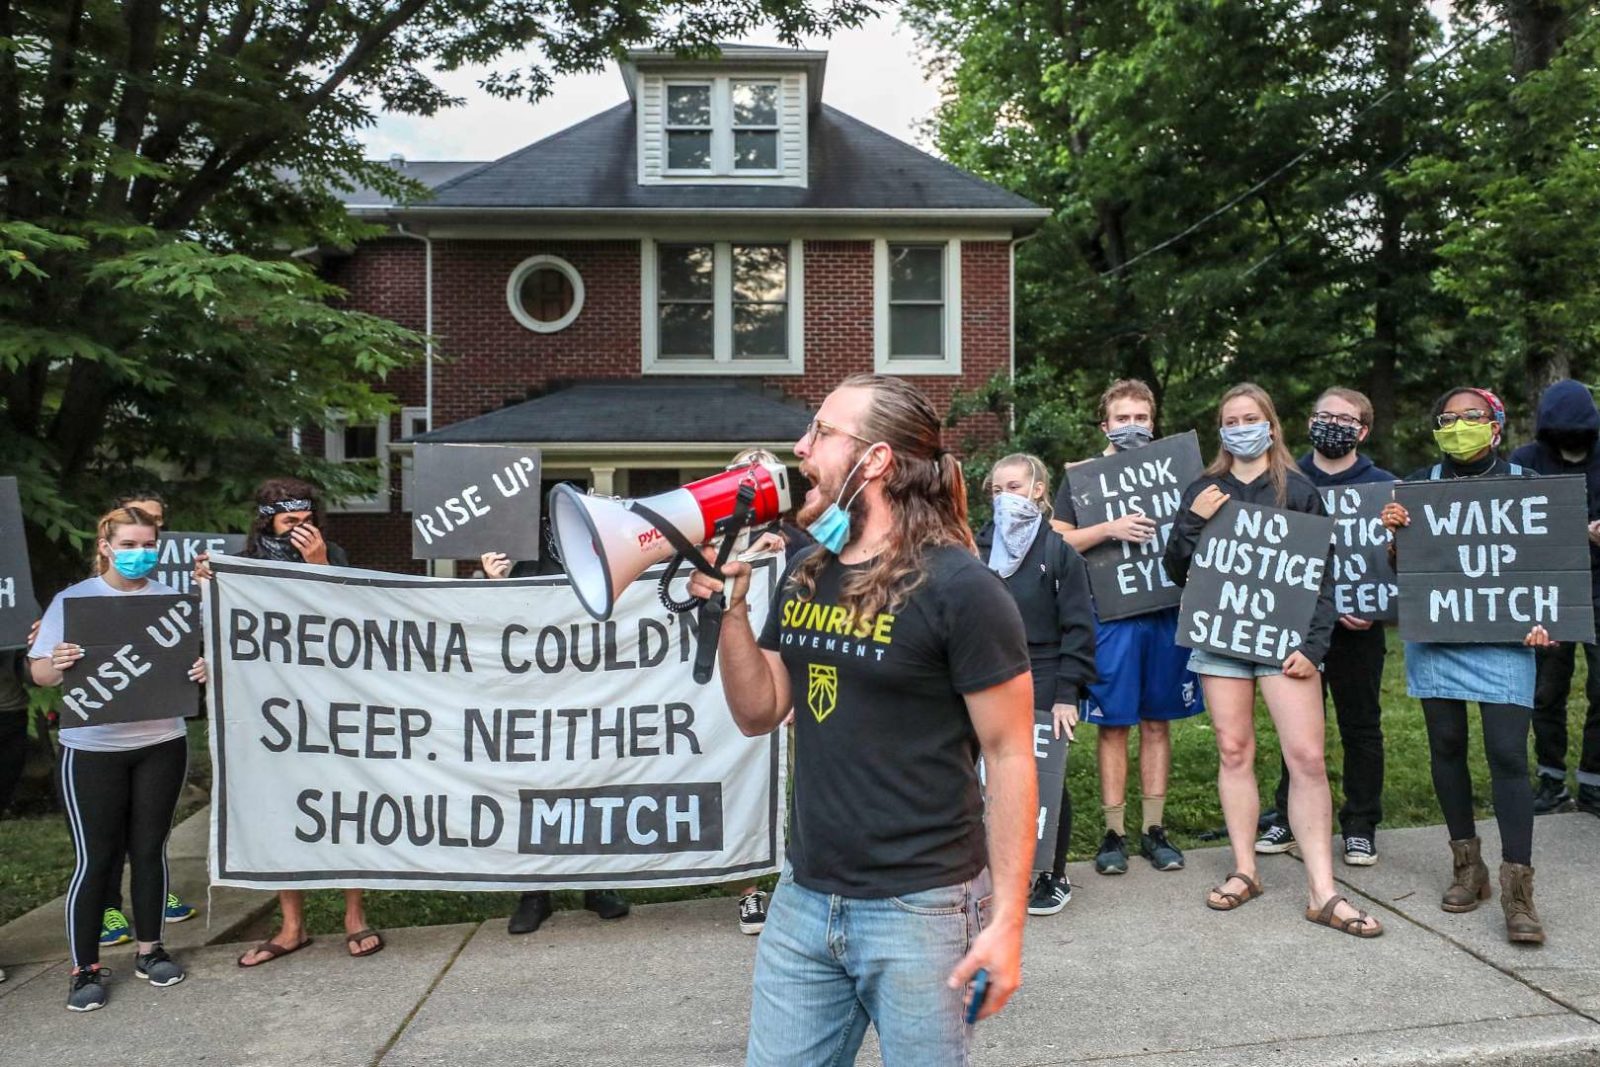 Um ativista do Sunrise fala em um megafone enquanto outros manifestantes estão em frente à casa KY de Mitch McConnell segurando uma grande placa dizendo "Breonna não conseguiu dormir. Nem deveria Mitch".